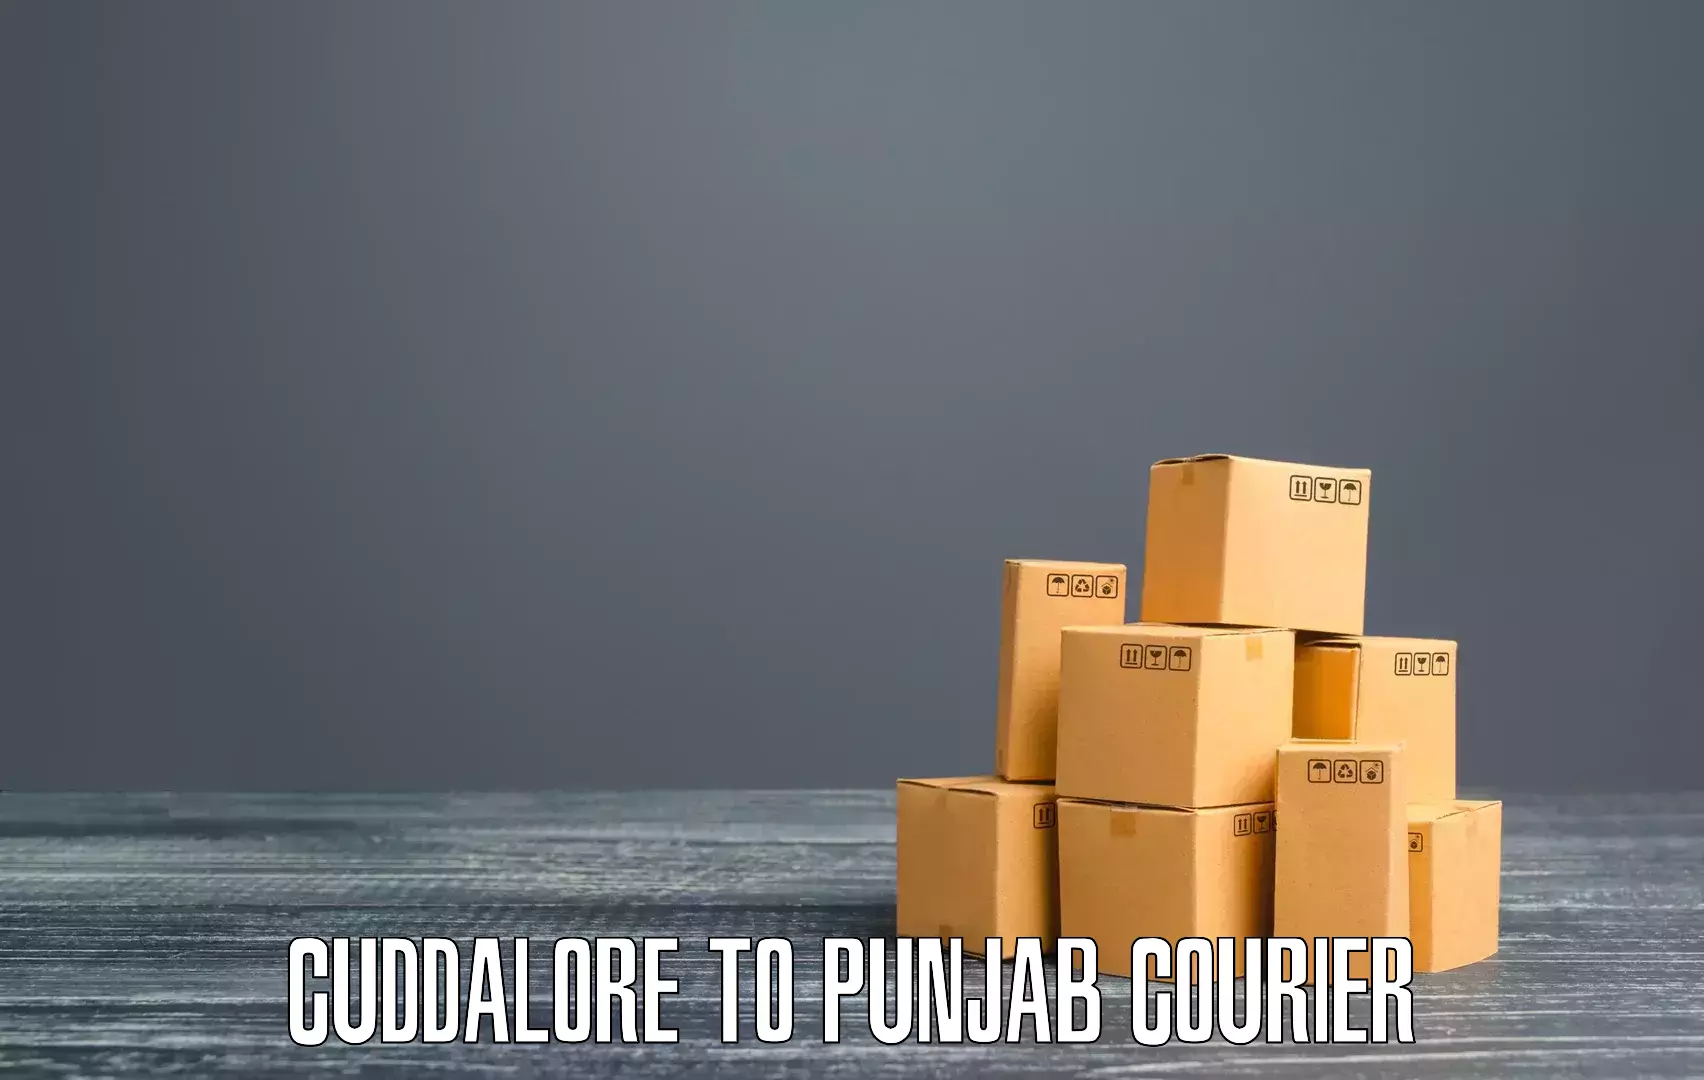 Premium courier solutions Cuddalore to Bhadaur